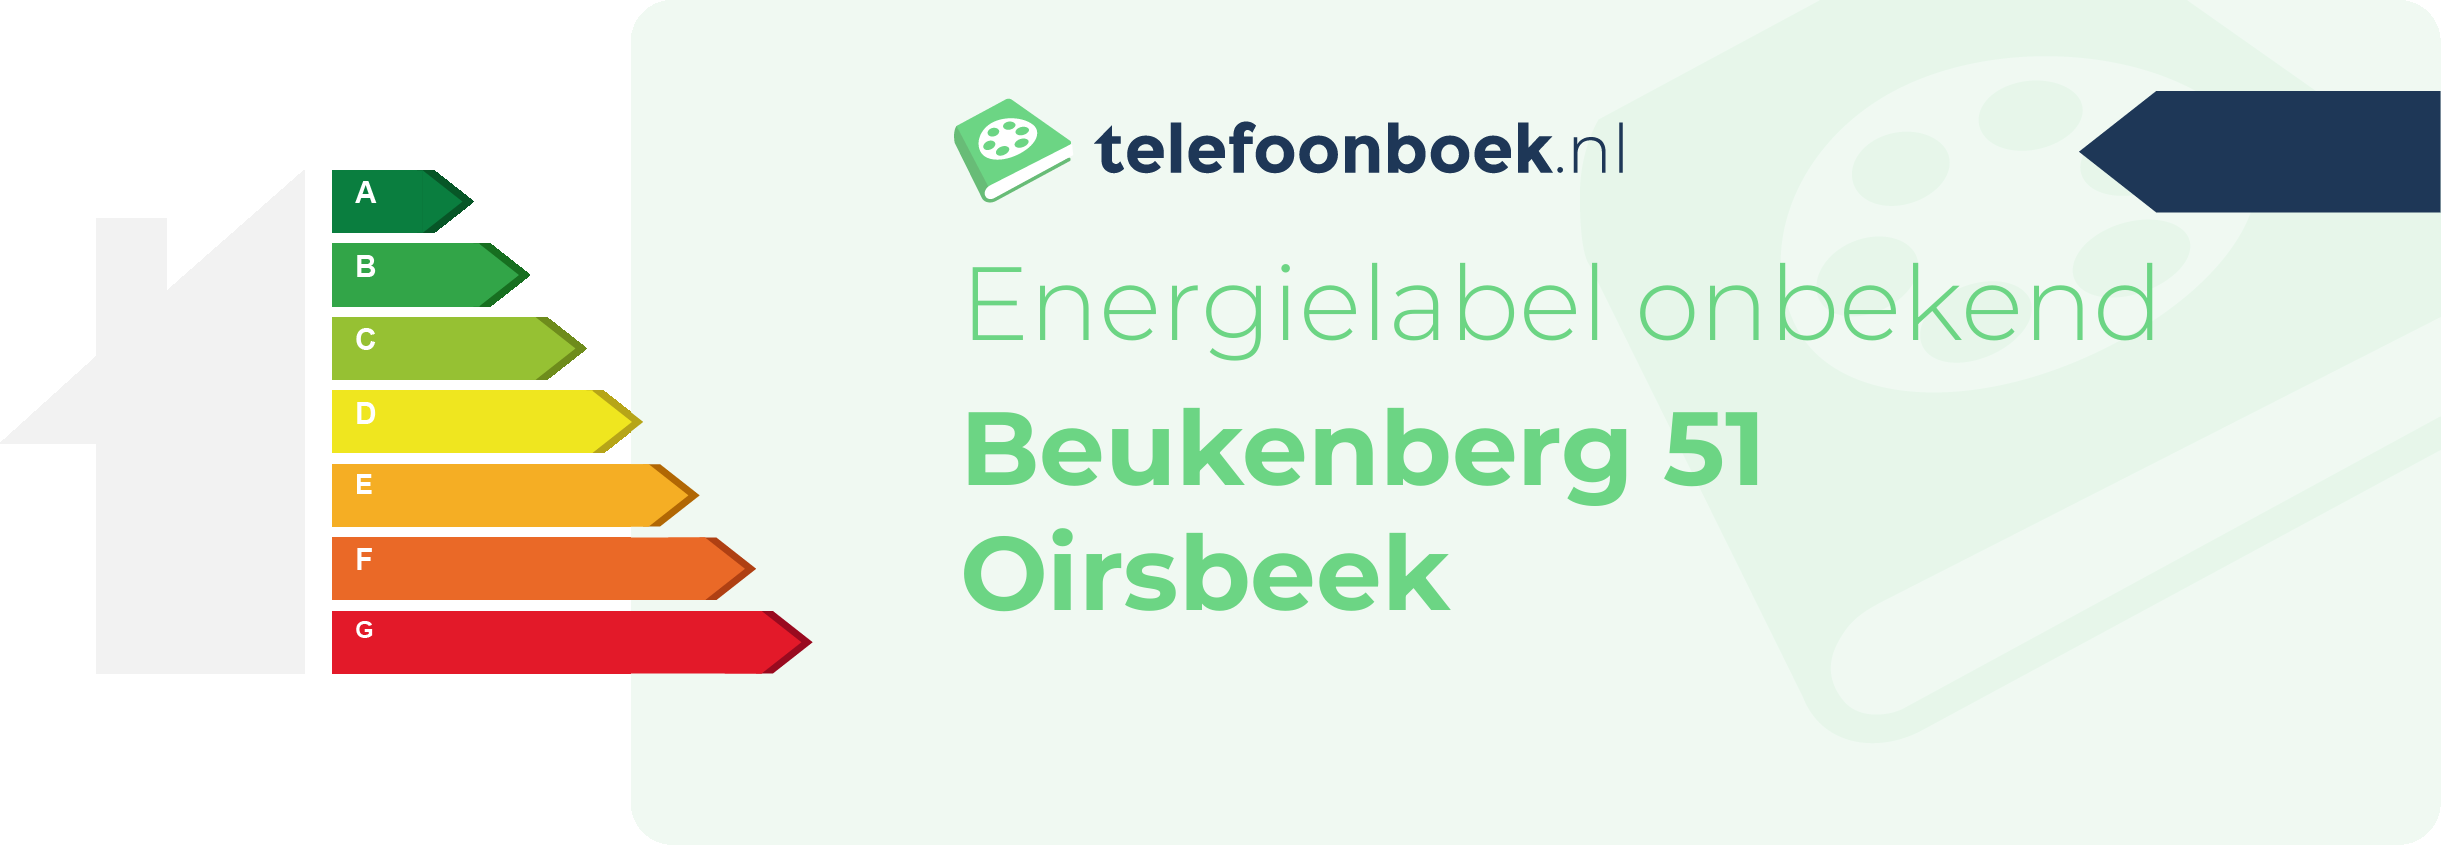 Energielabel Beukenberg 51 Oirsbeek